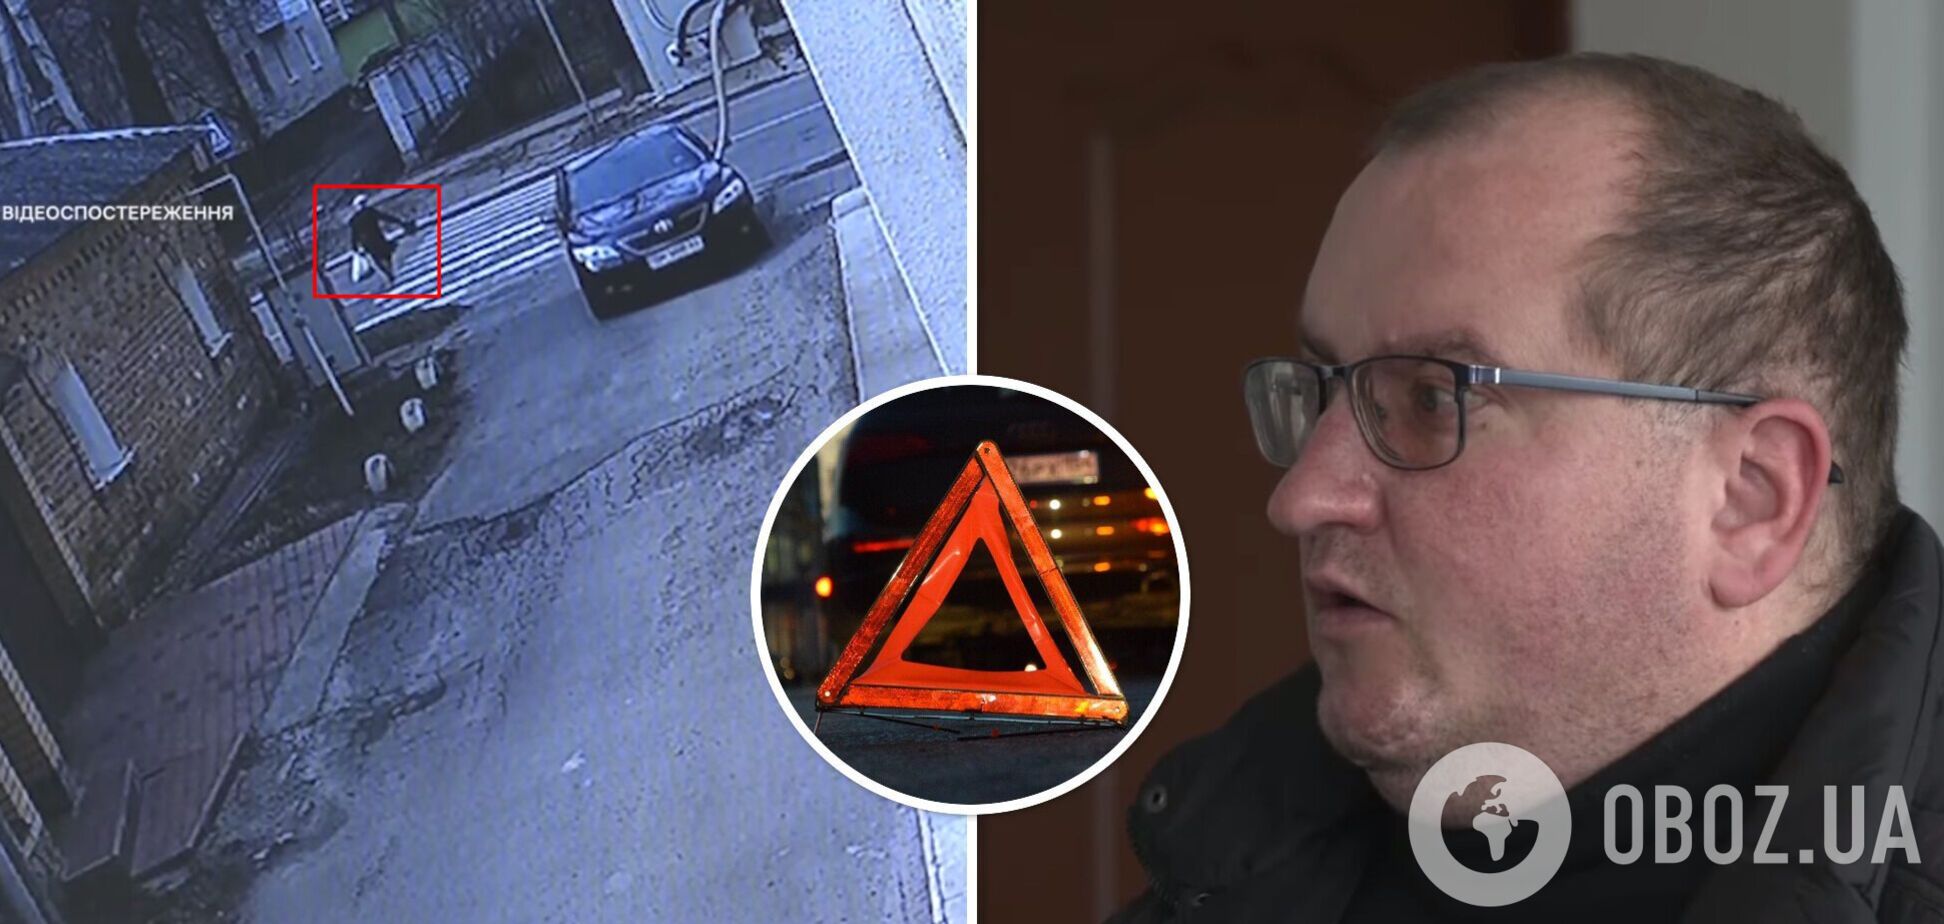 Александр Кукса арестован после смертельного дорожно-транспортного происшествия